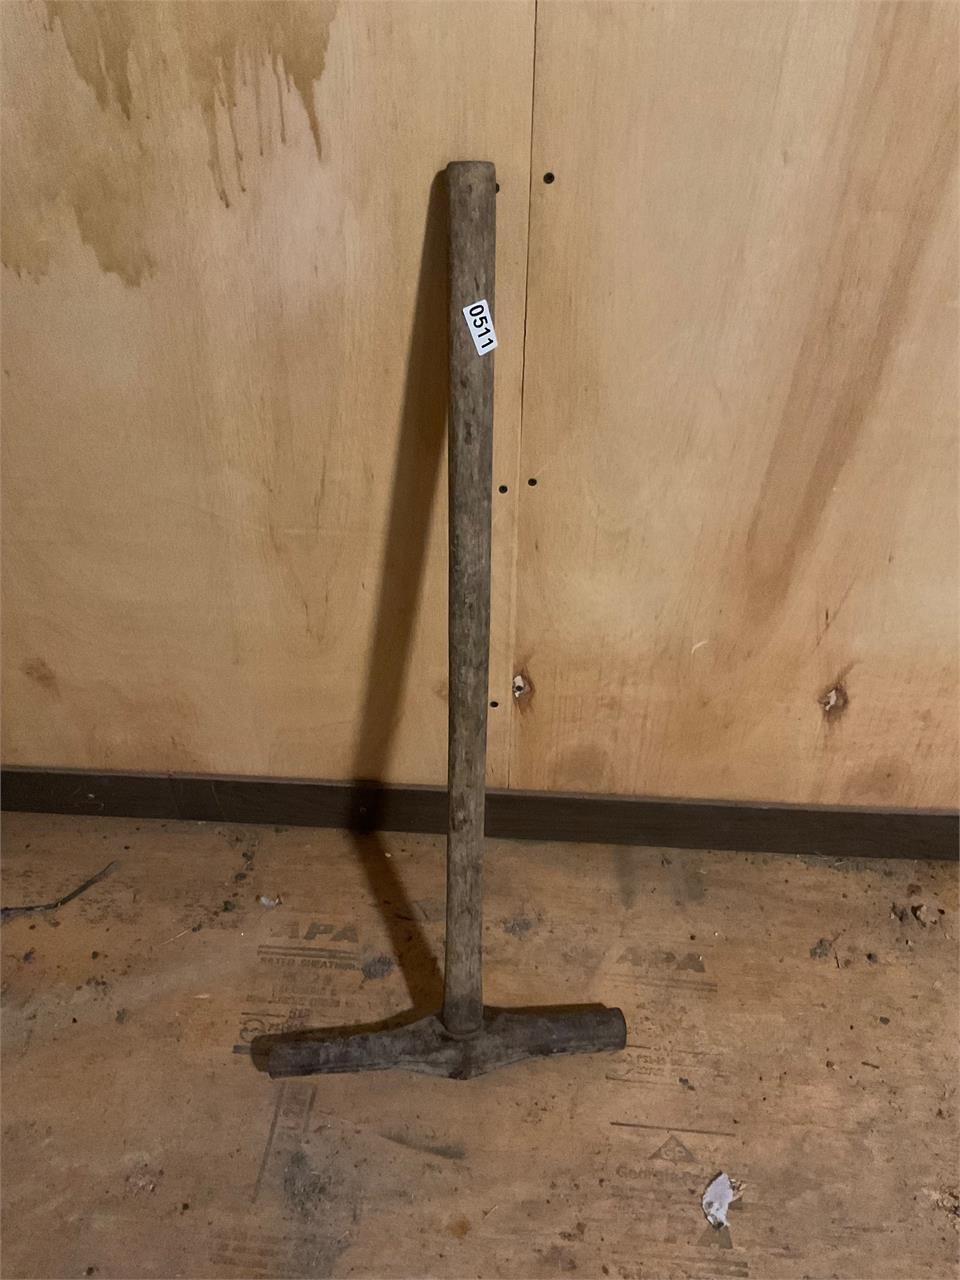 Working tool – railroad spike hammer